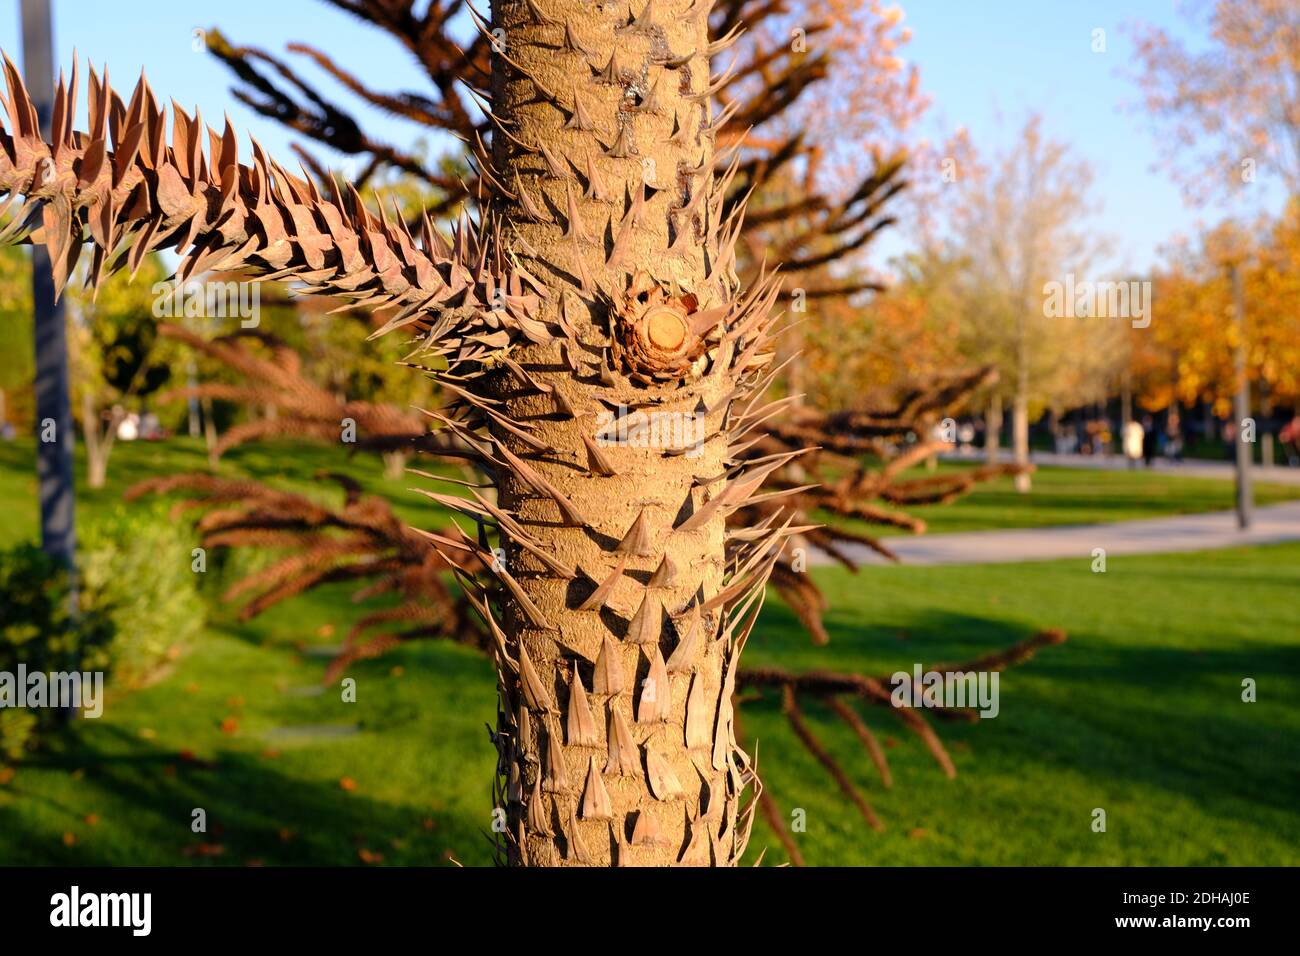 Araucaria araucana, pino chileno o detalle de tronco de árbol de rompecabezas de monos. Foto de stock